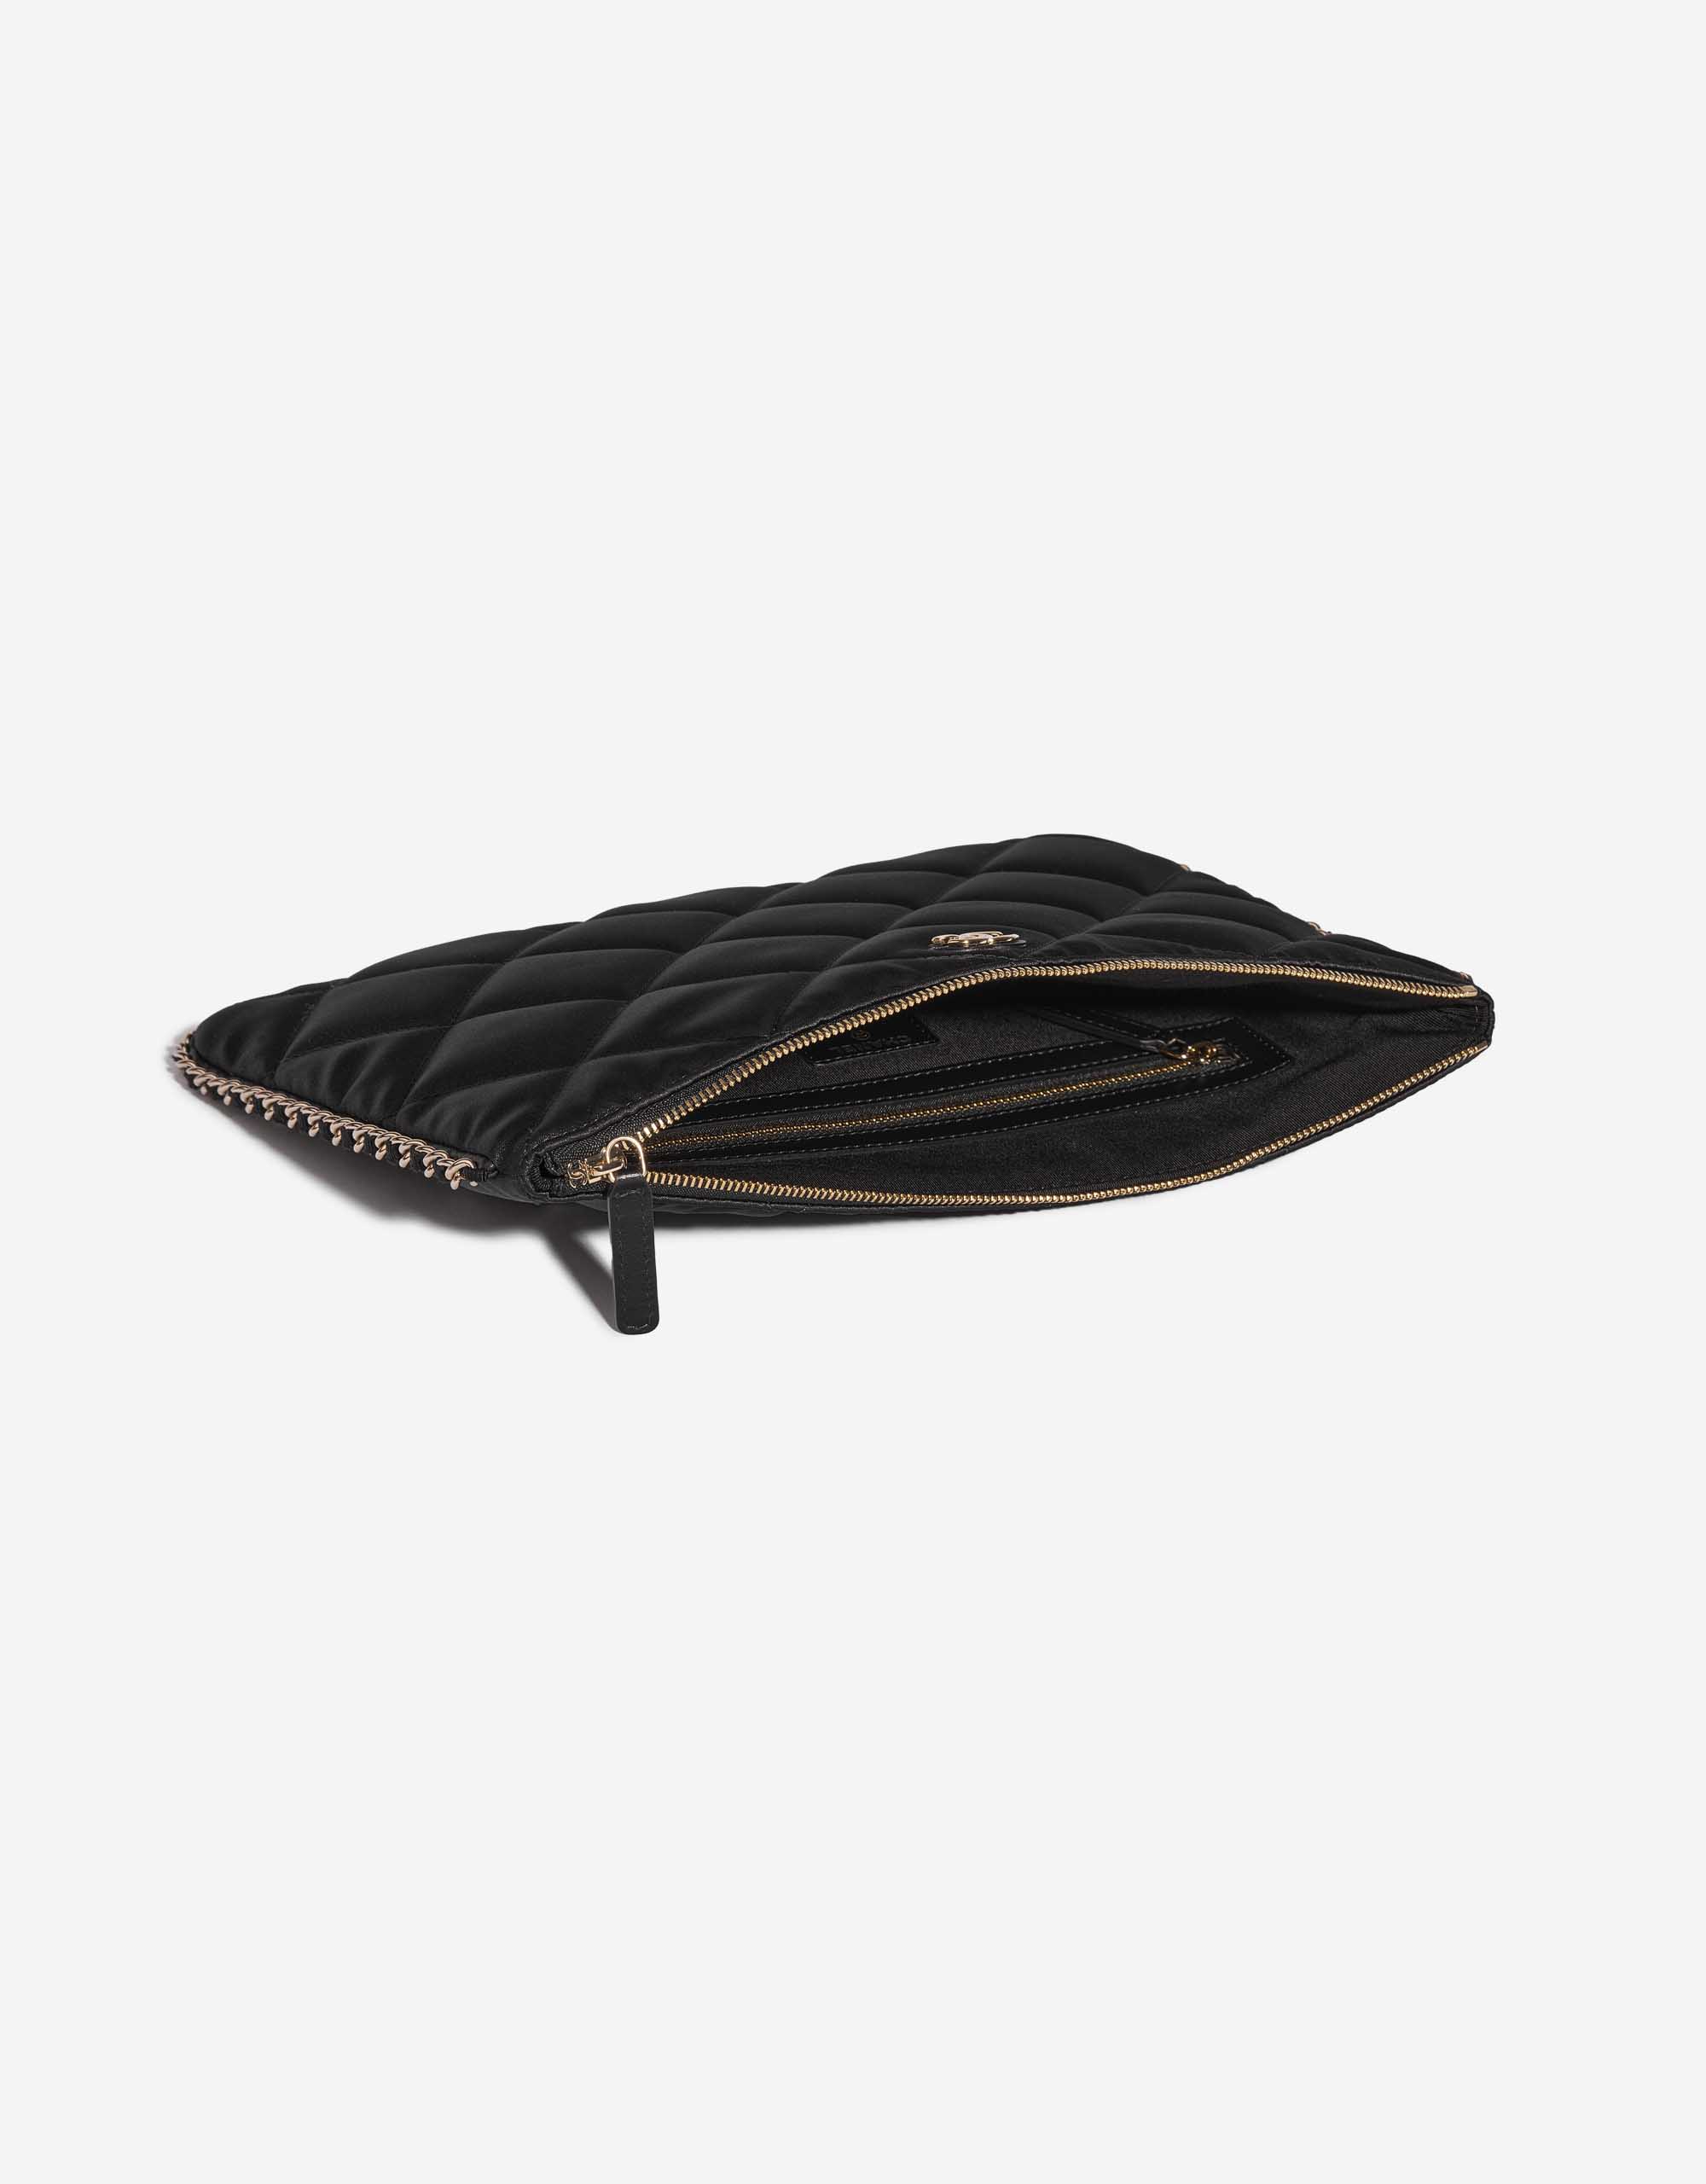 Sac Chanel d'occasion Classique Pochette Soie Noir Noir Intérieur | Vendez votre sac de créateur sur Saclab.com